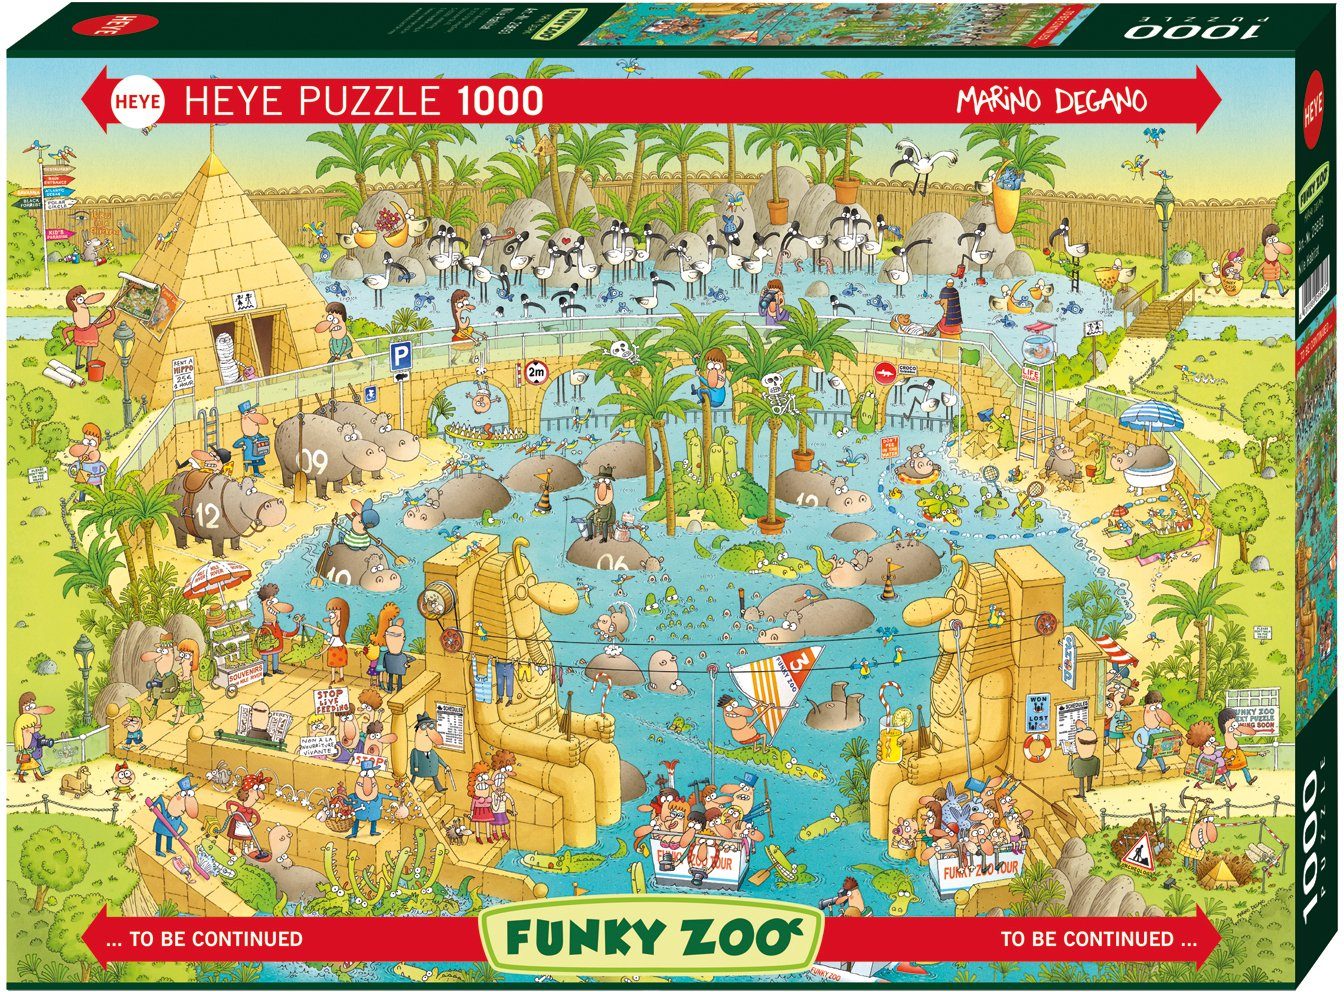 HEYE Puzzle Nile Habitat, Puzzleteile, Germany Made 1000 in